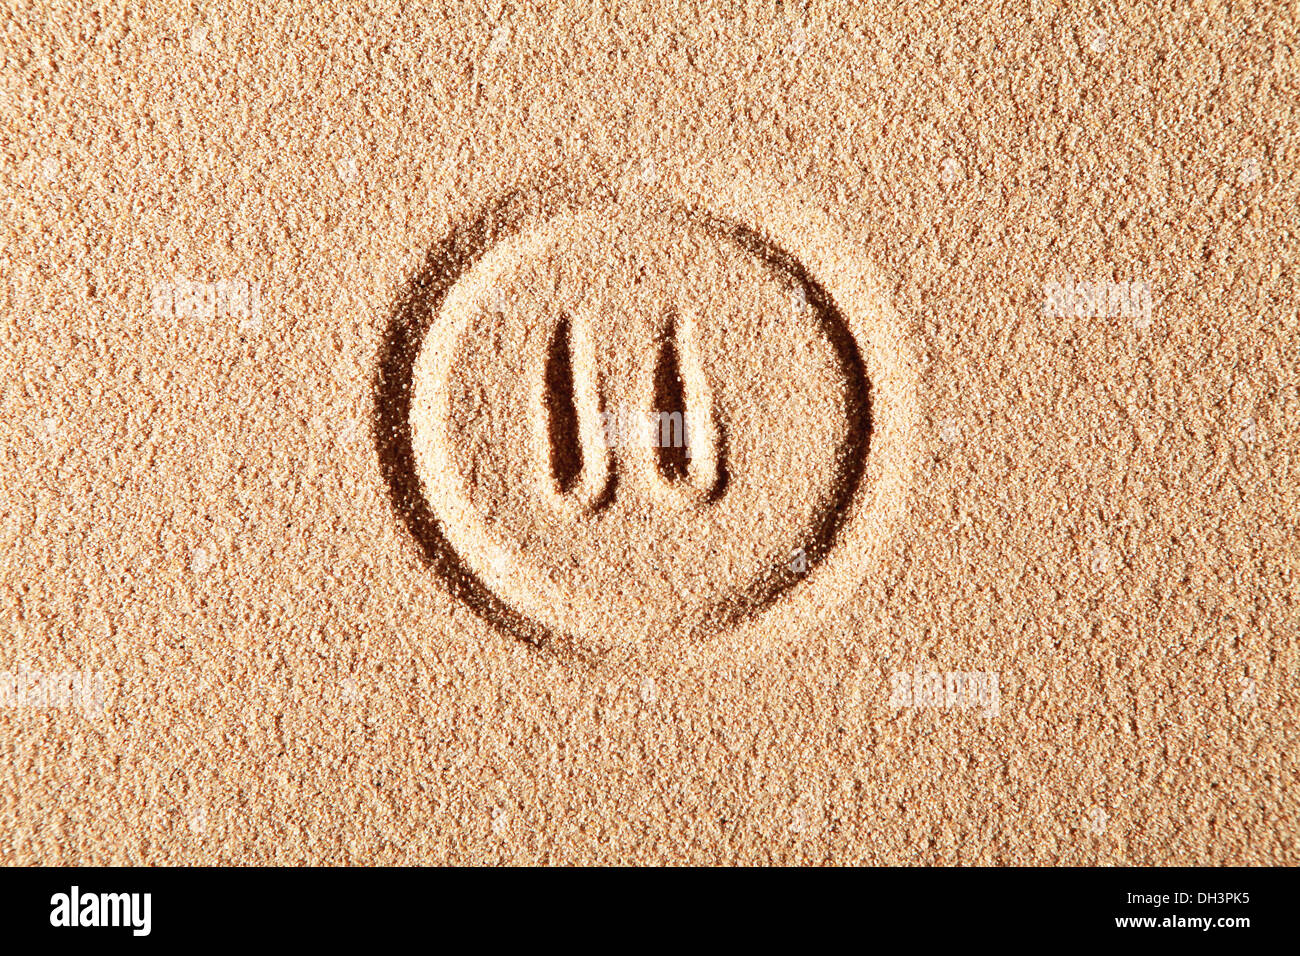 Simbolo di pausa, disegnata nella sabbia Foto Stock